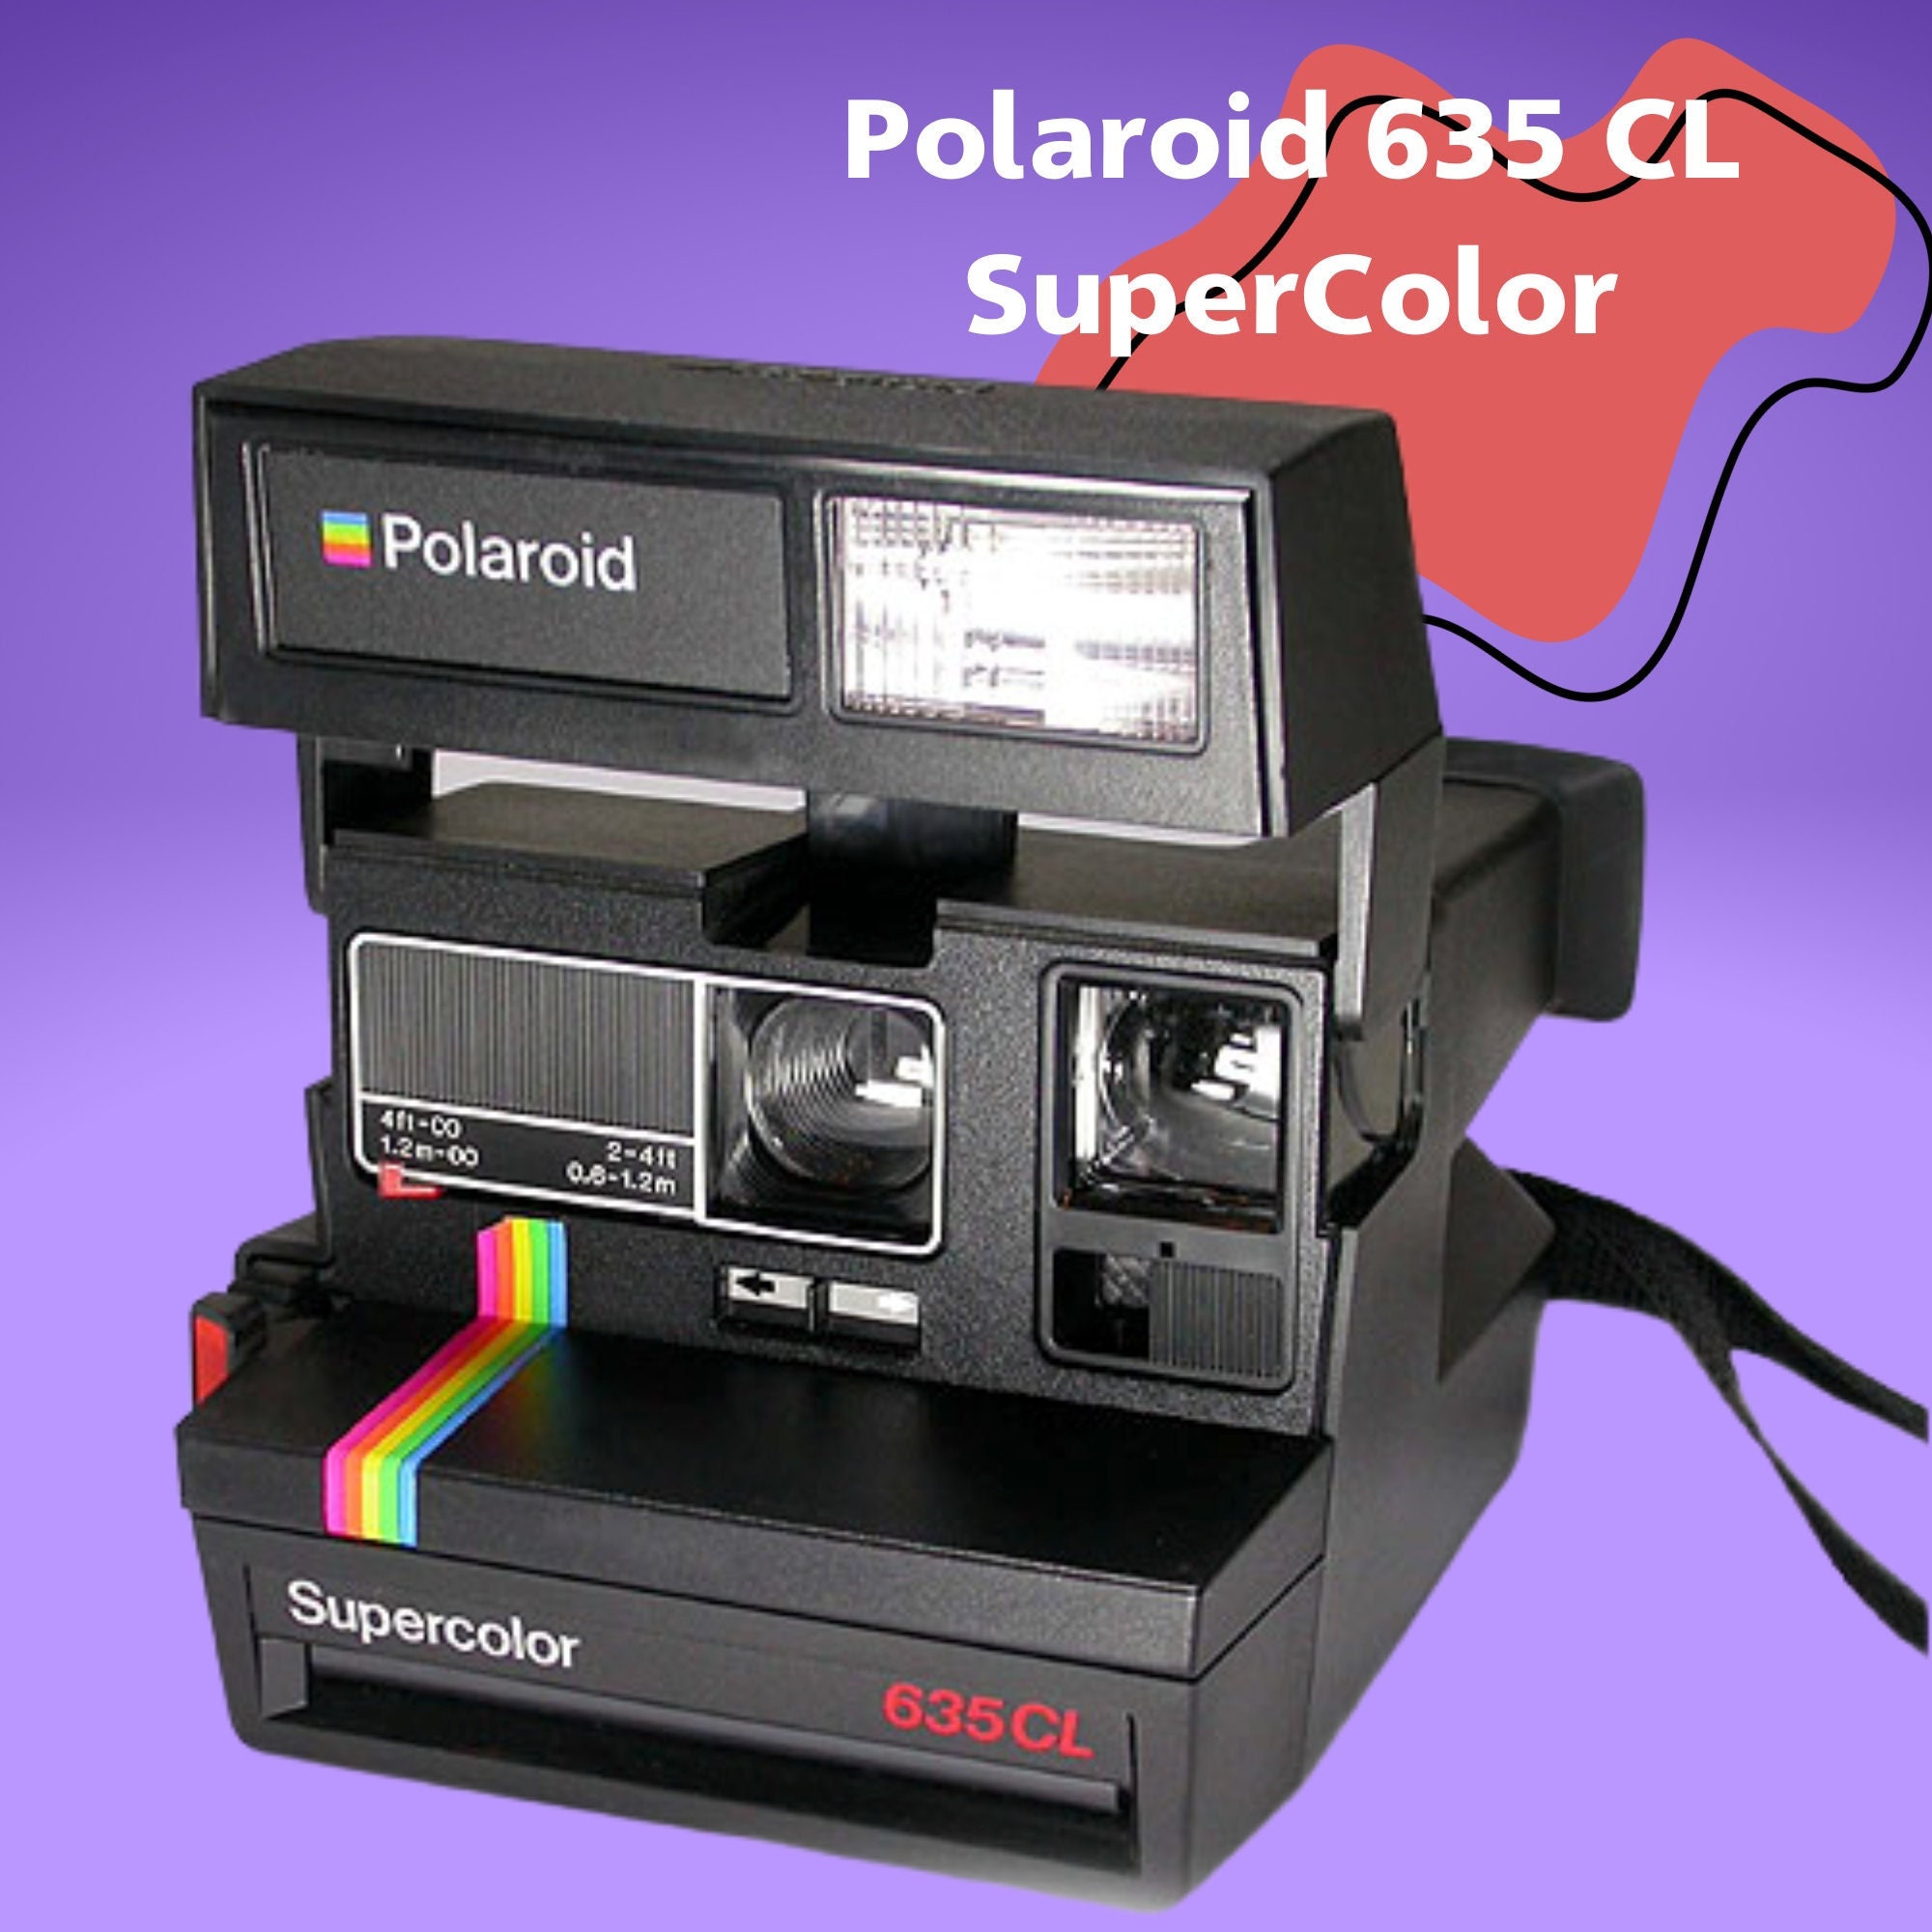 Polaroid 1000  Oferta cámara instantánea